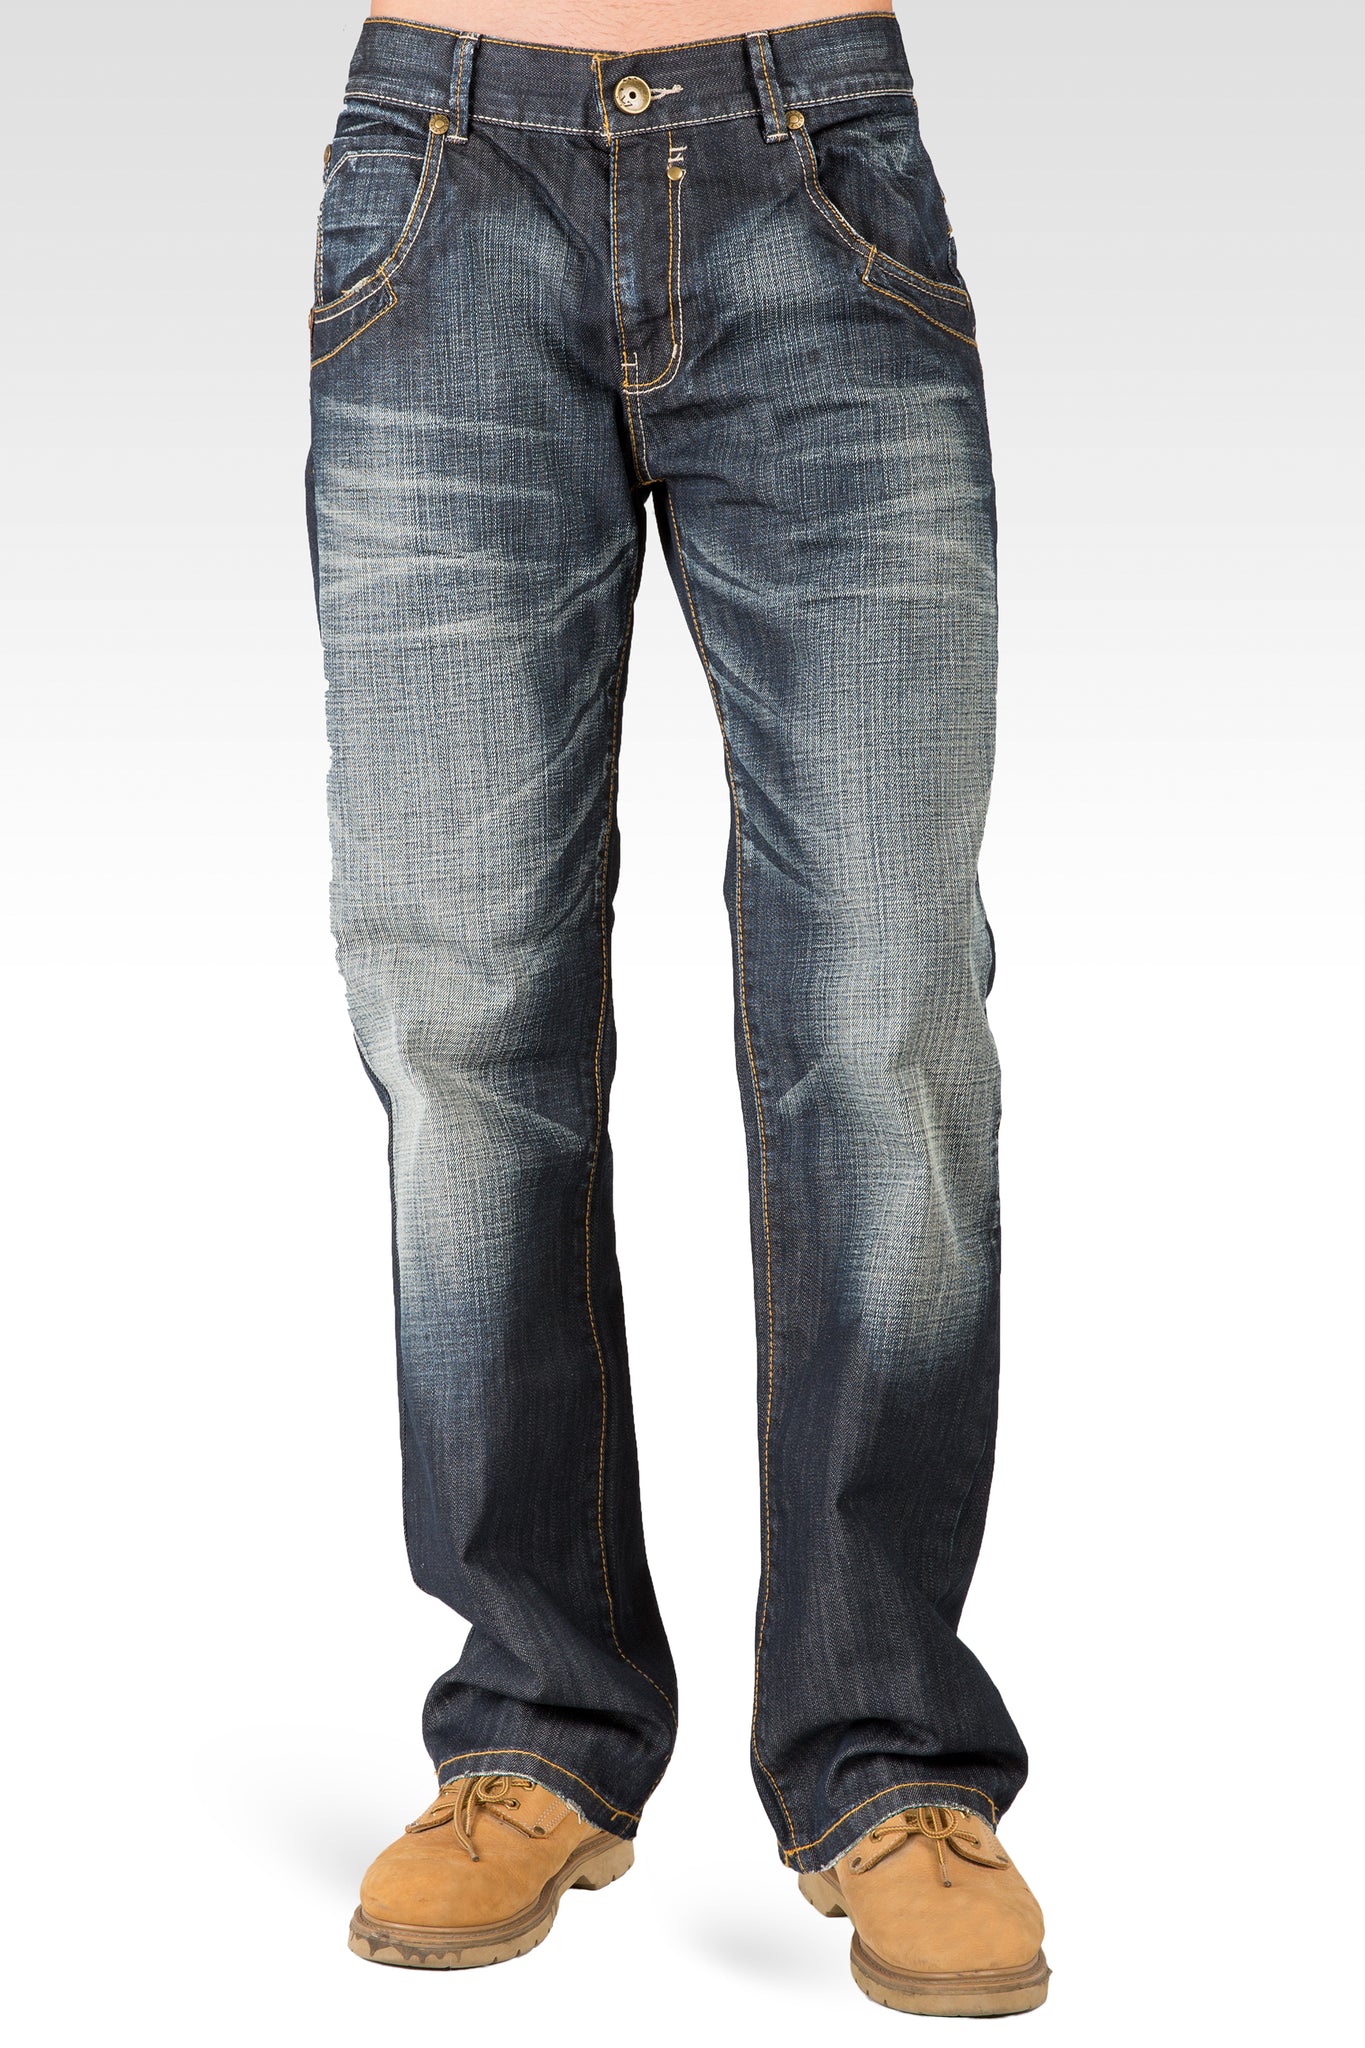 Men's Relaxed Bootcut Coated Premium Denim Jeans Hand Sanding Whisker Zipper Pockets